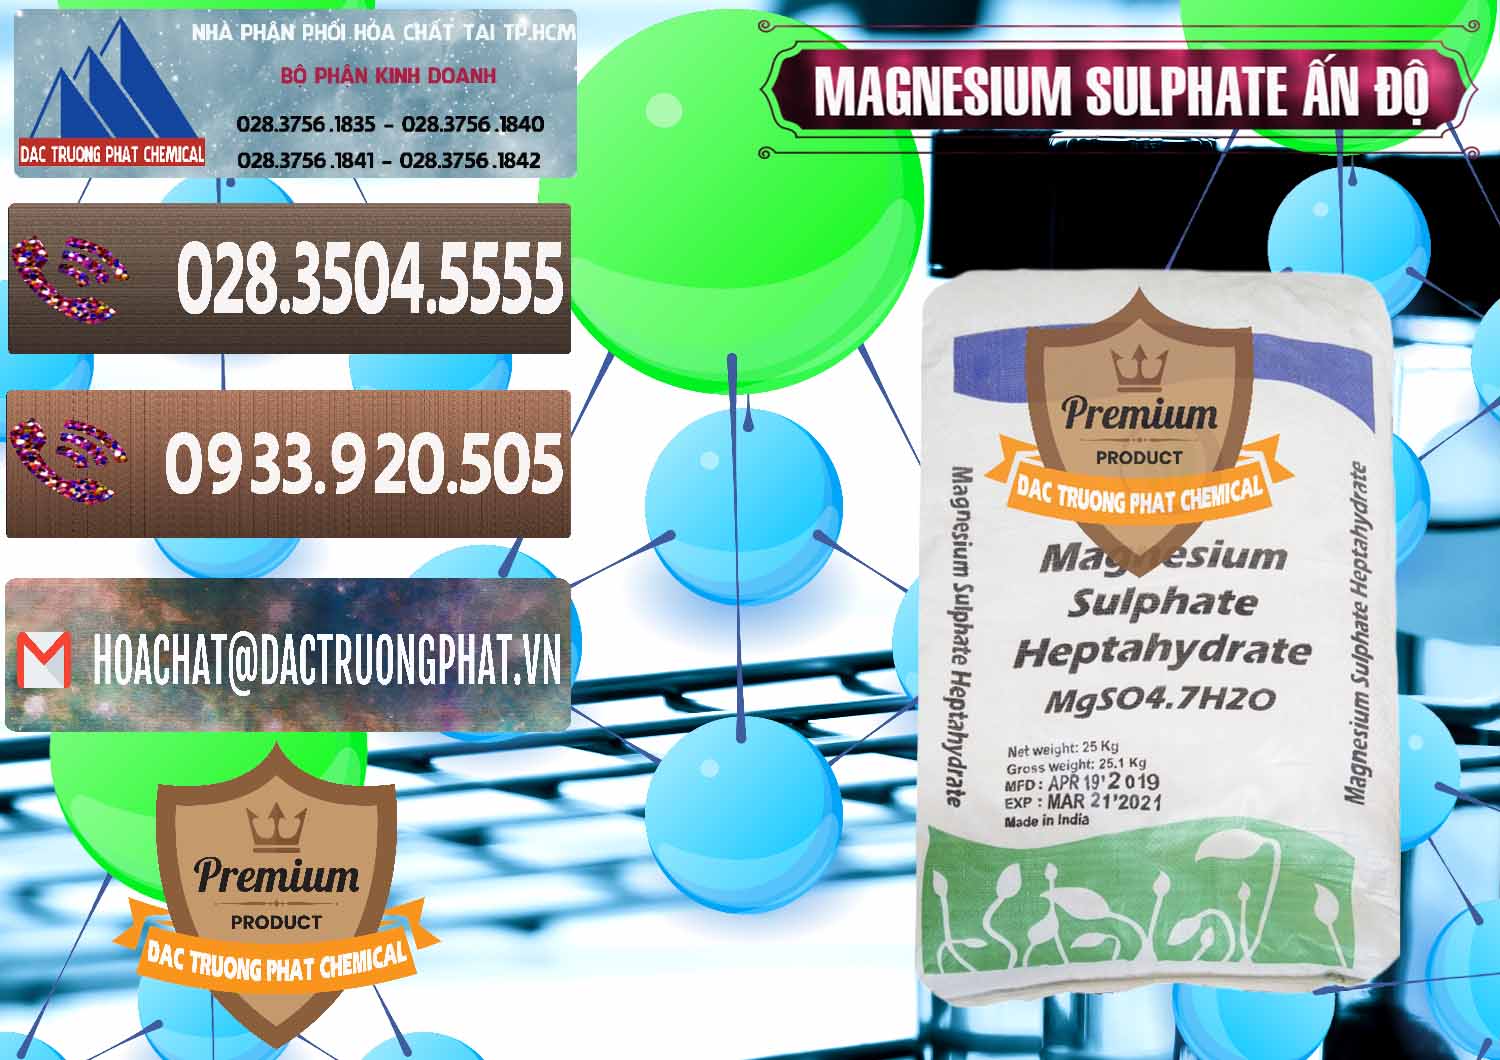 Cty bán - cung ứng MGSO4.7H2O – Magnesium Sulphate Heptahydrate Ấn Độ India - 0362 - Cty chuyên kinh doanh và phân phối hóa chất tại TP.HCM - hoachatviet.net